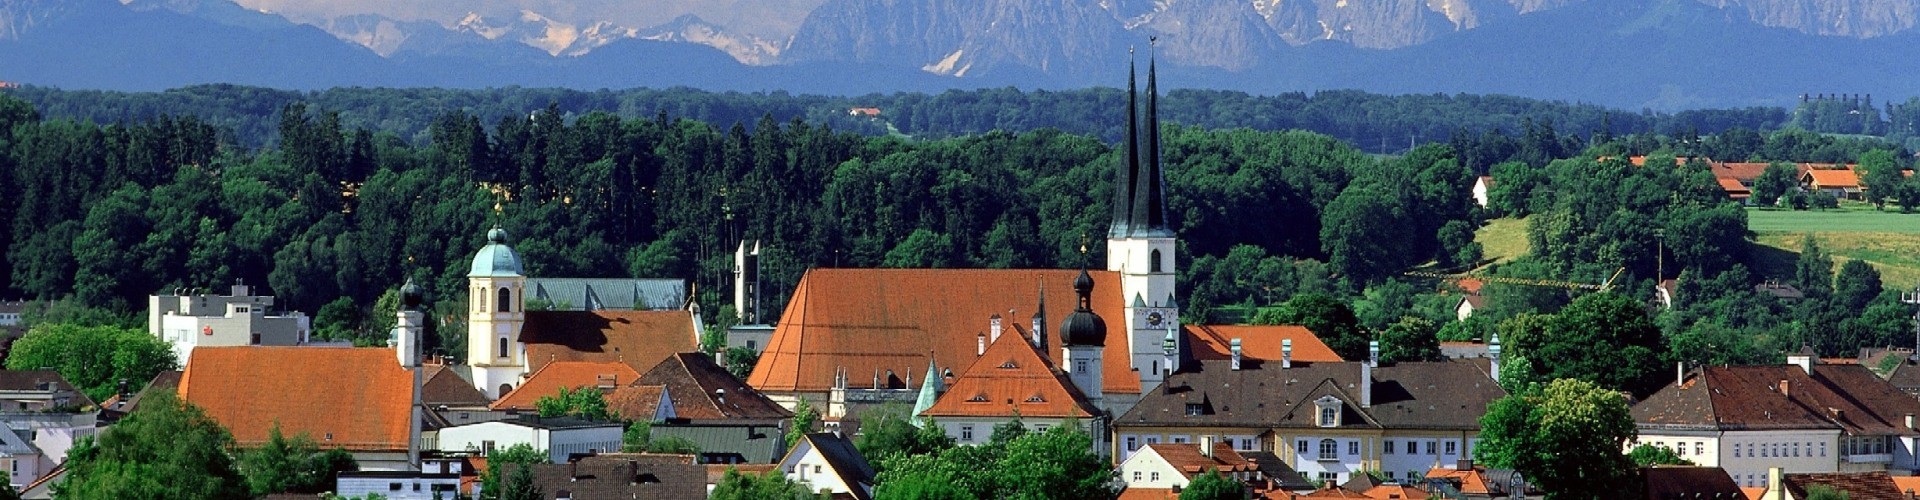 Die Stadt Altötting mit dem Alpenpanorama im Hintergrund.